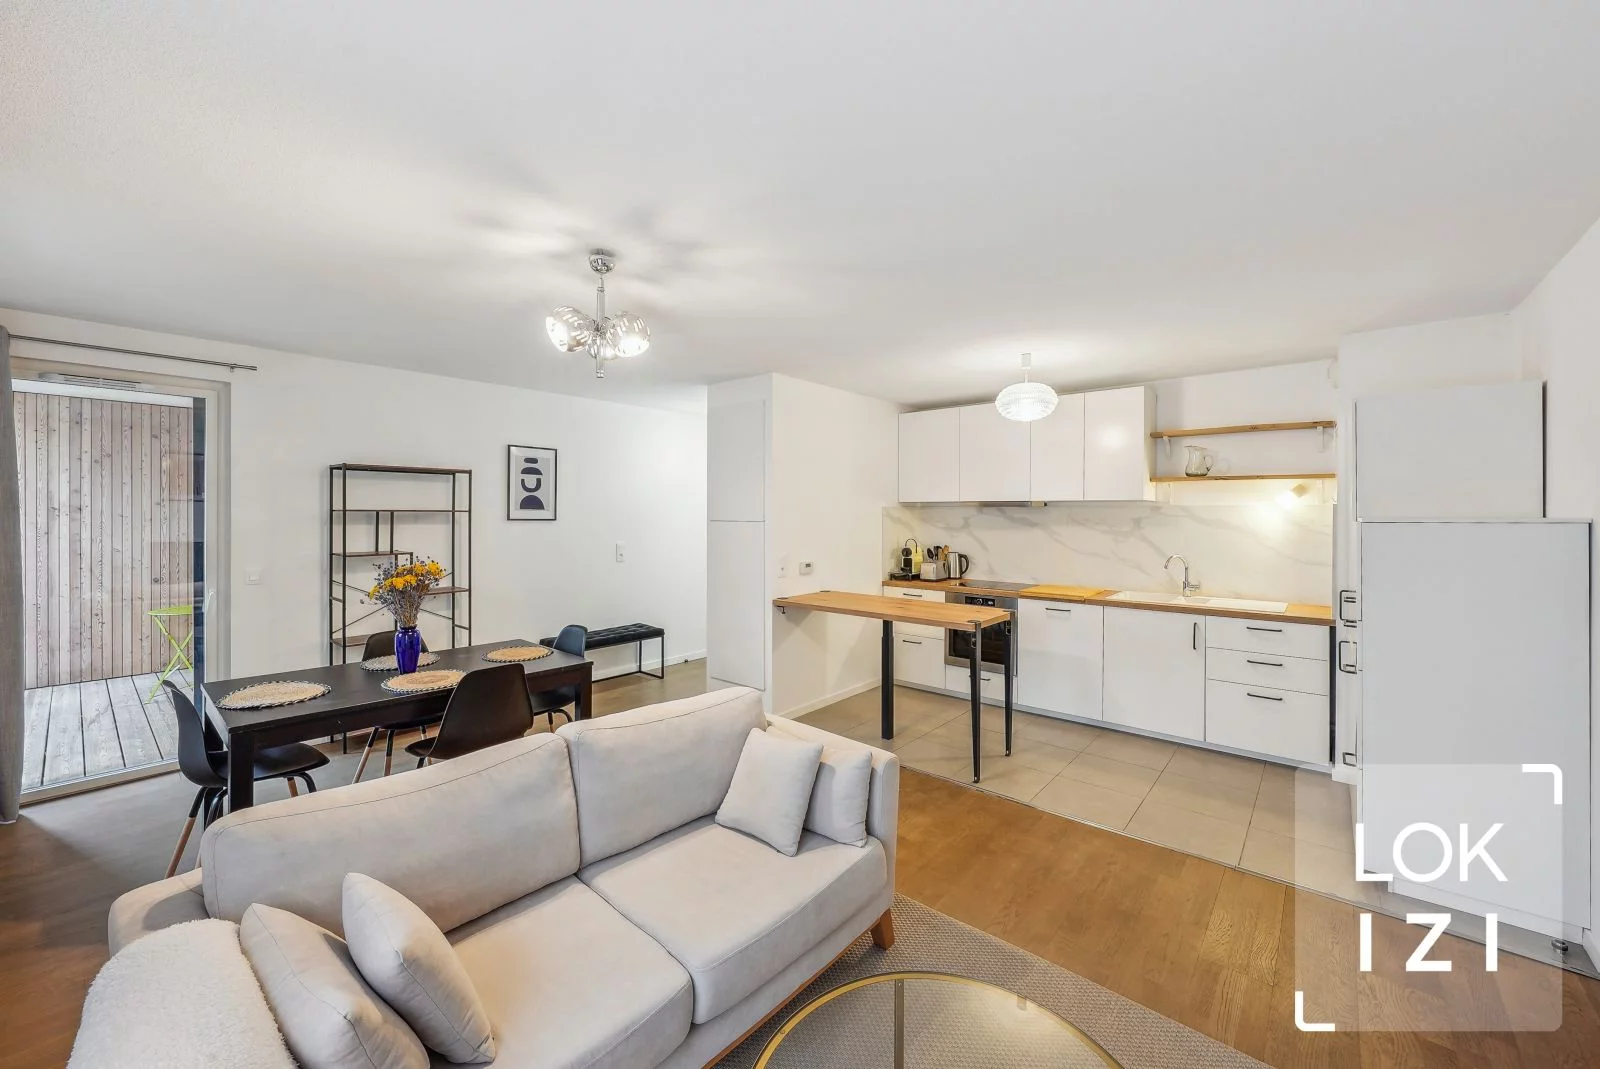 Location appartement meublé 3 pièces 63m² (Bordeaux - Bassins à flot)